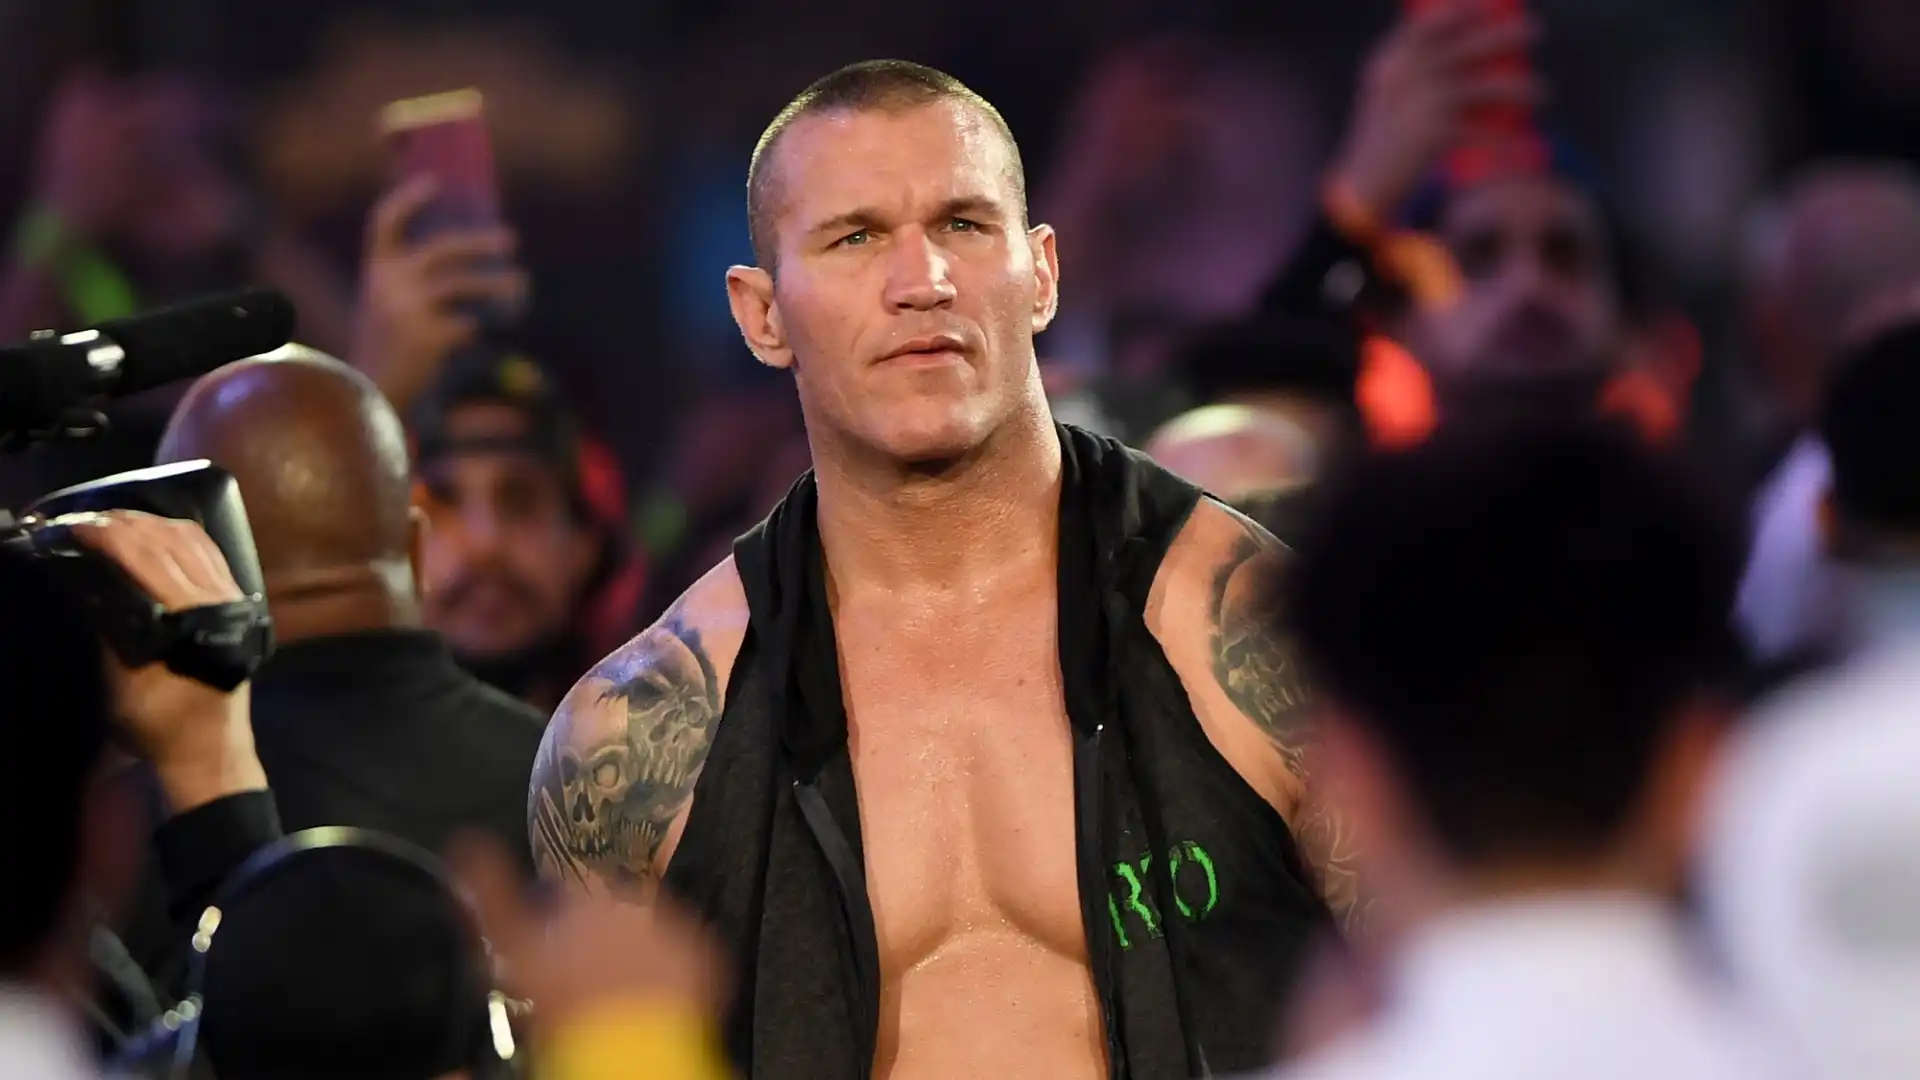 Randy Orton: stipendio stimato 4,5 milioni di dollari. Wrestler veterano, alla WWE dal 2002, è stato il più giovane campione mondiale nella storia. Detiene il maggior numero di presenze in pay-per-view